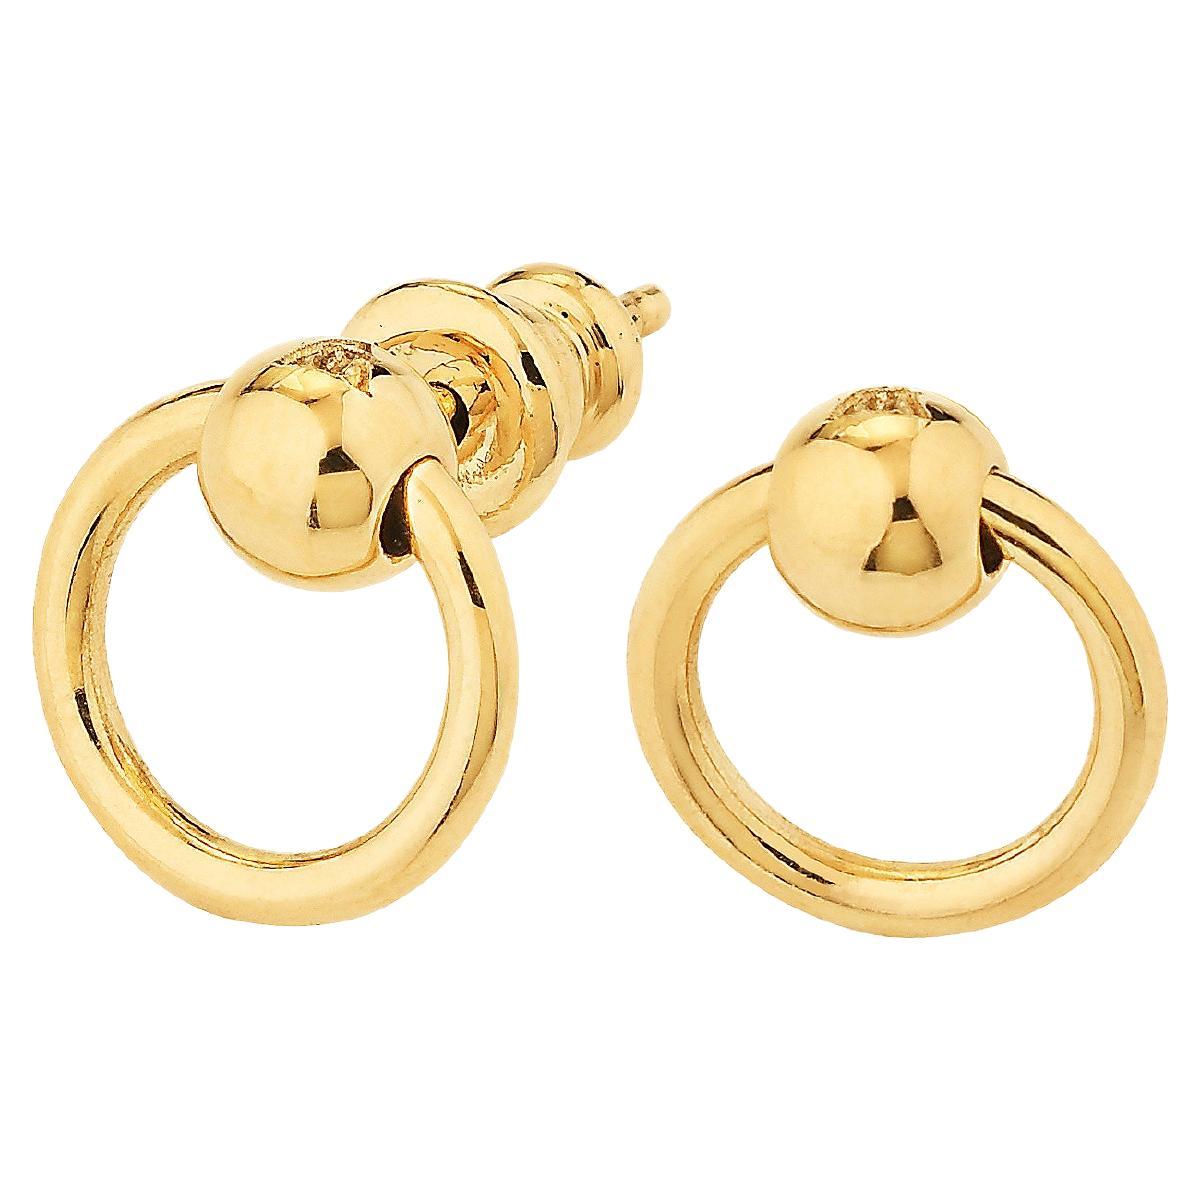 Betony Vernon "O'Ring Mini Earrings" 18 Karat Gold For Sale